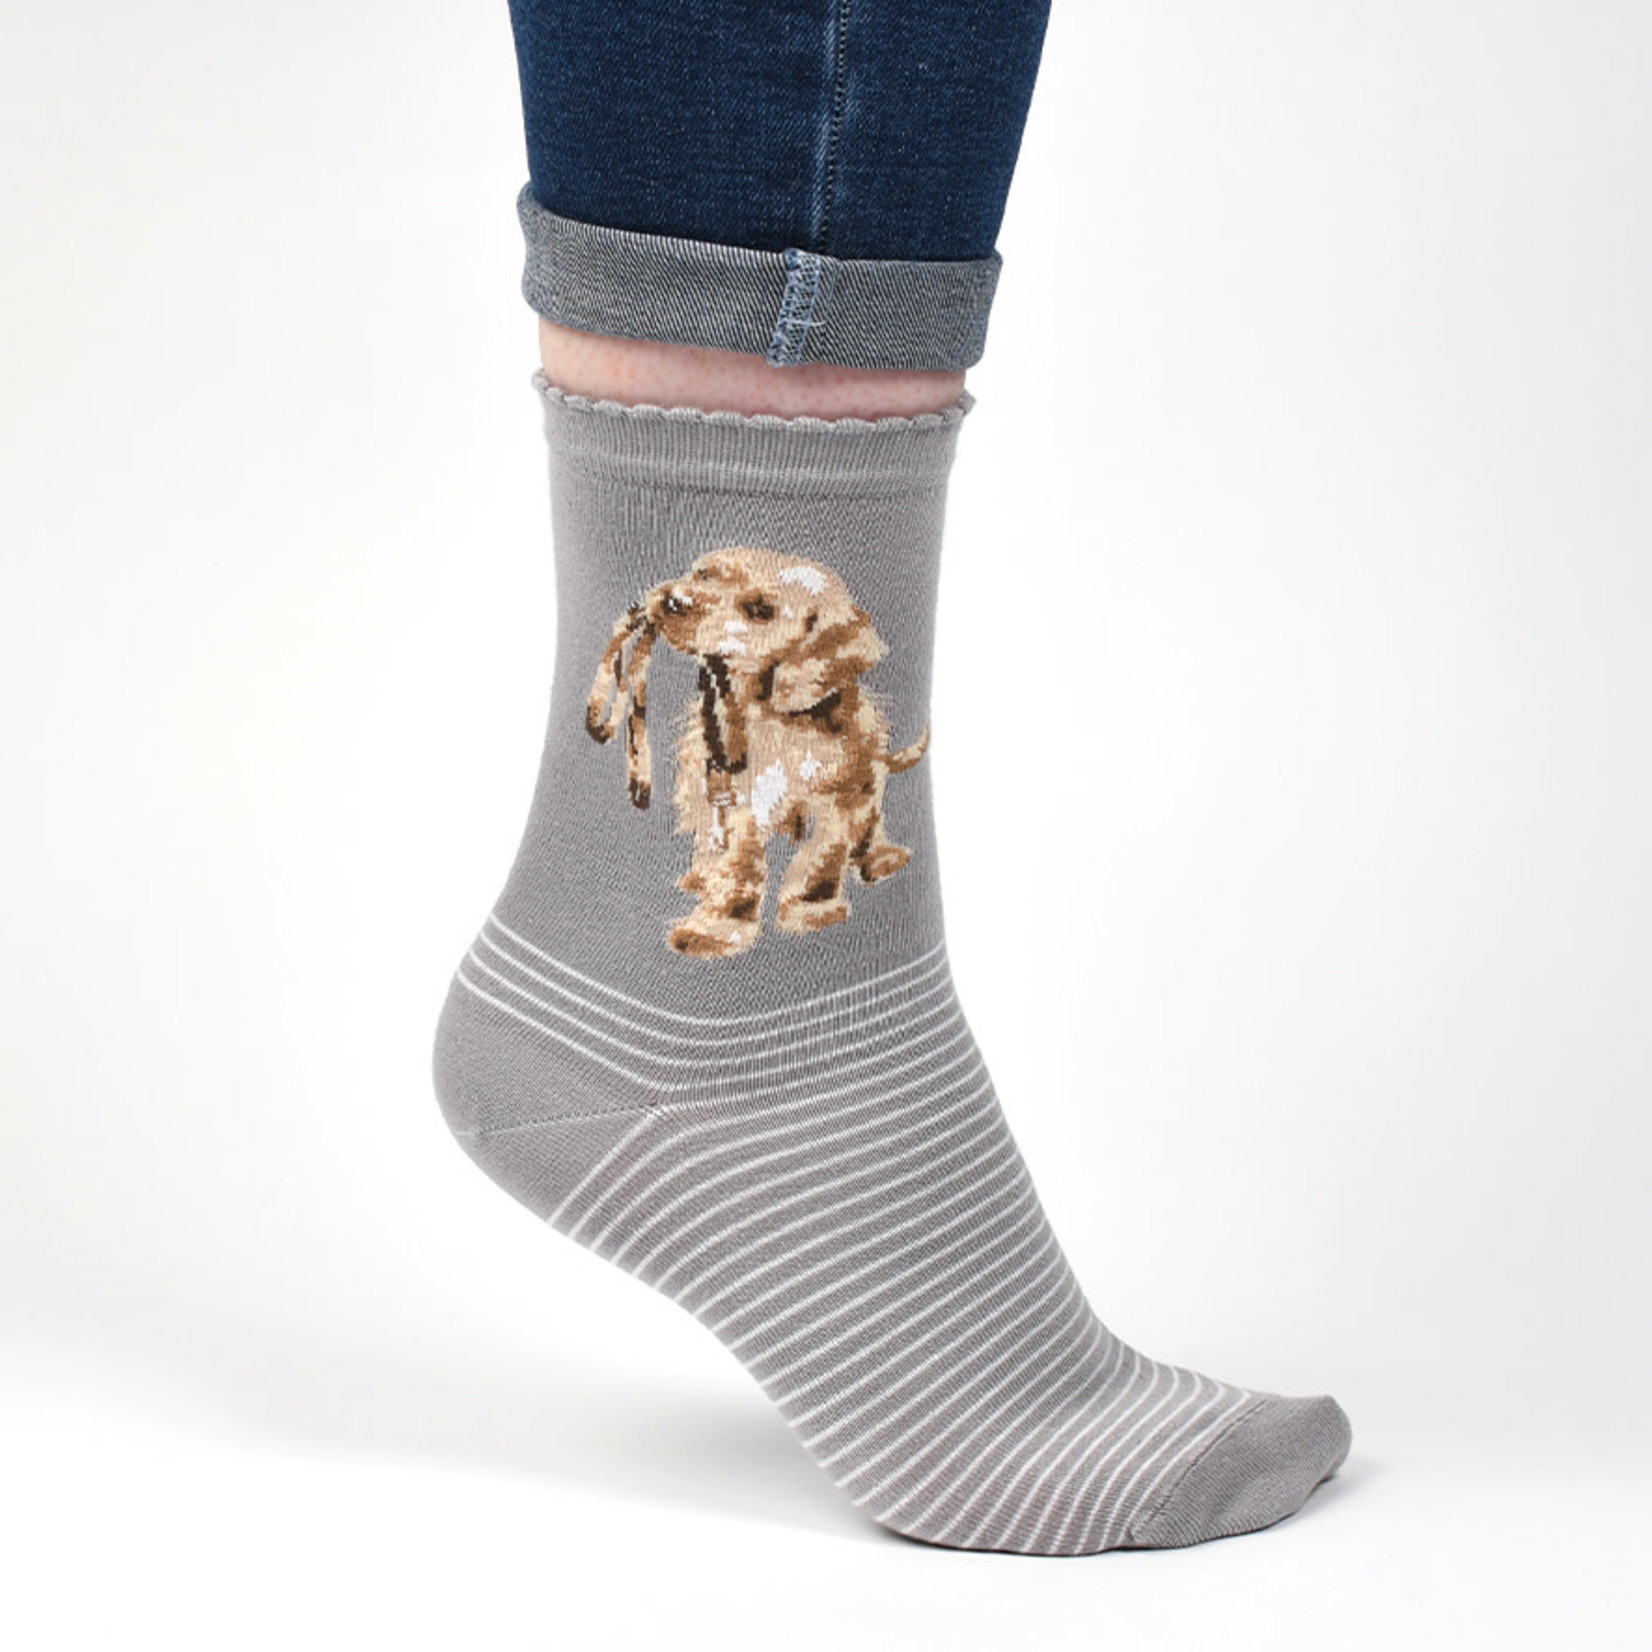 Wrendale Designs Socks - 'Hopeful' Labrador (SOCK010)